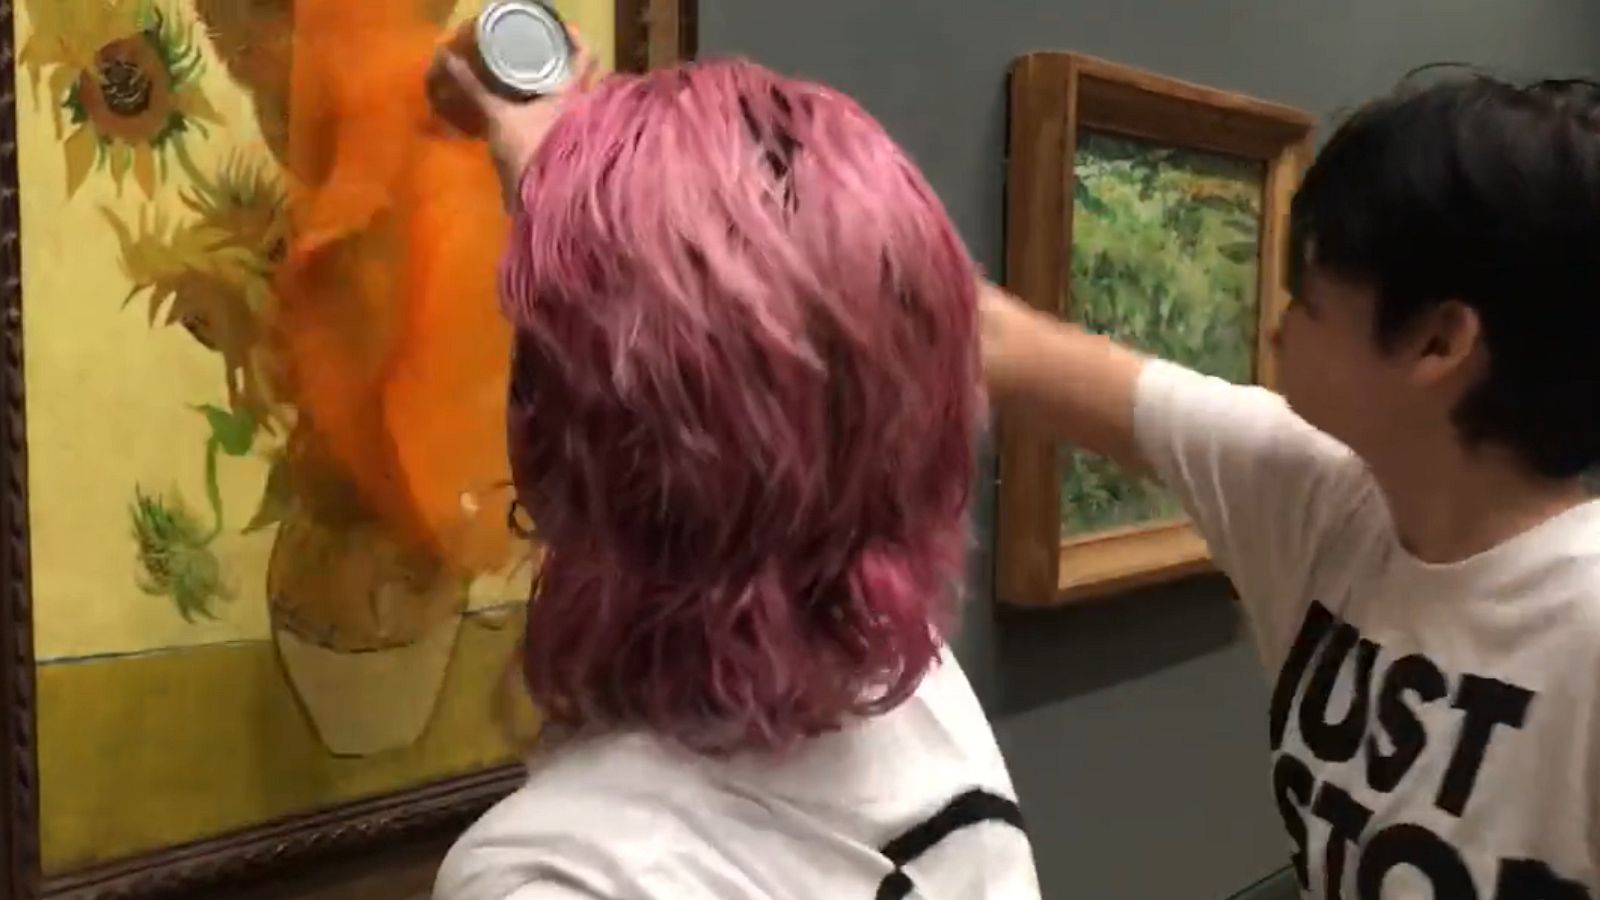 Activistas ecologistas arrojan sopa a 'Los girasoles' de Van Gogh